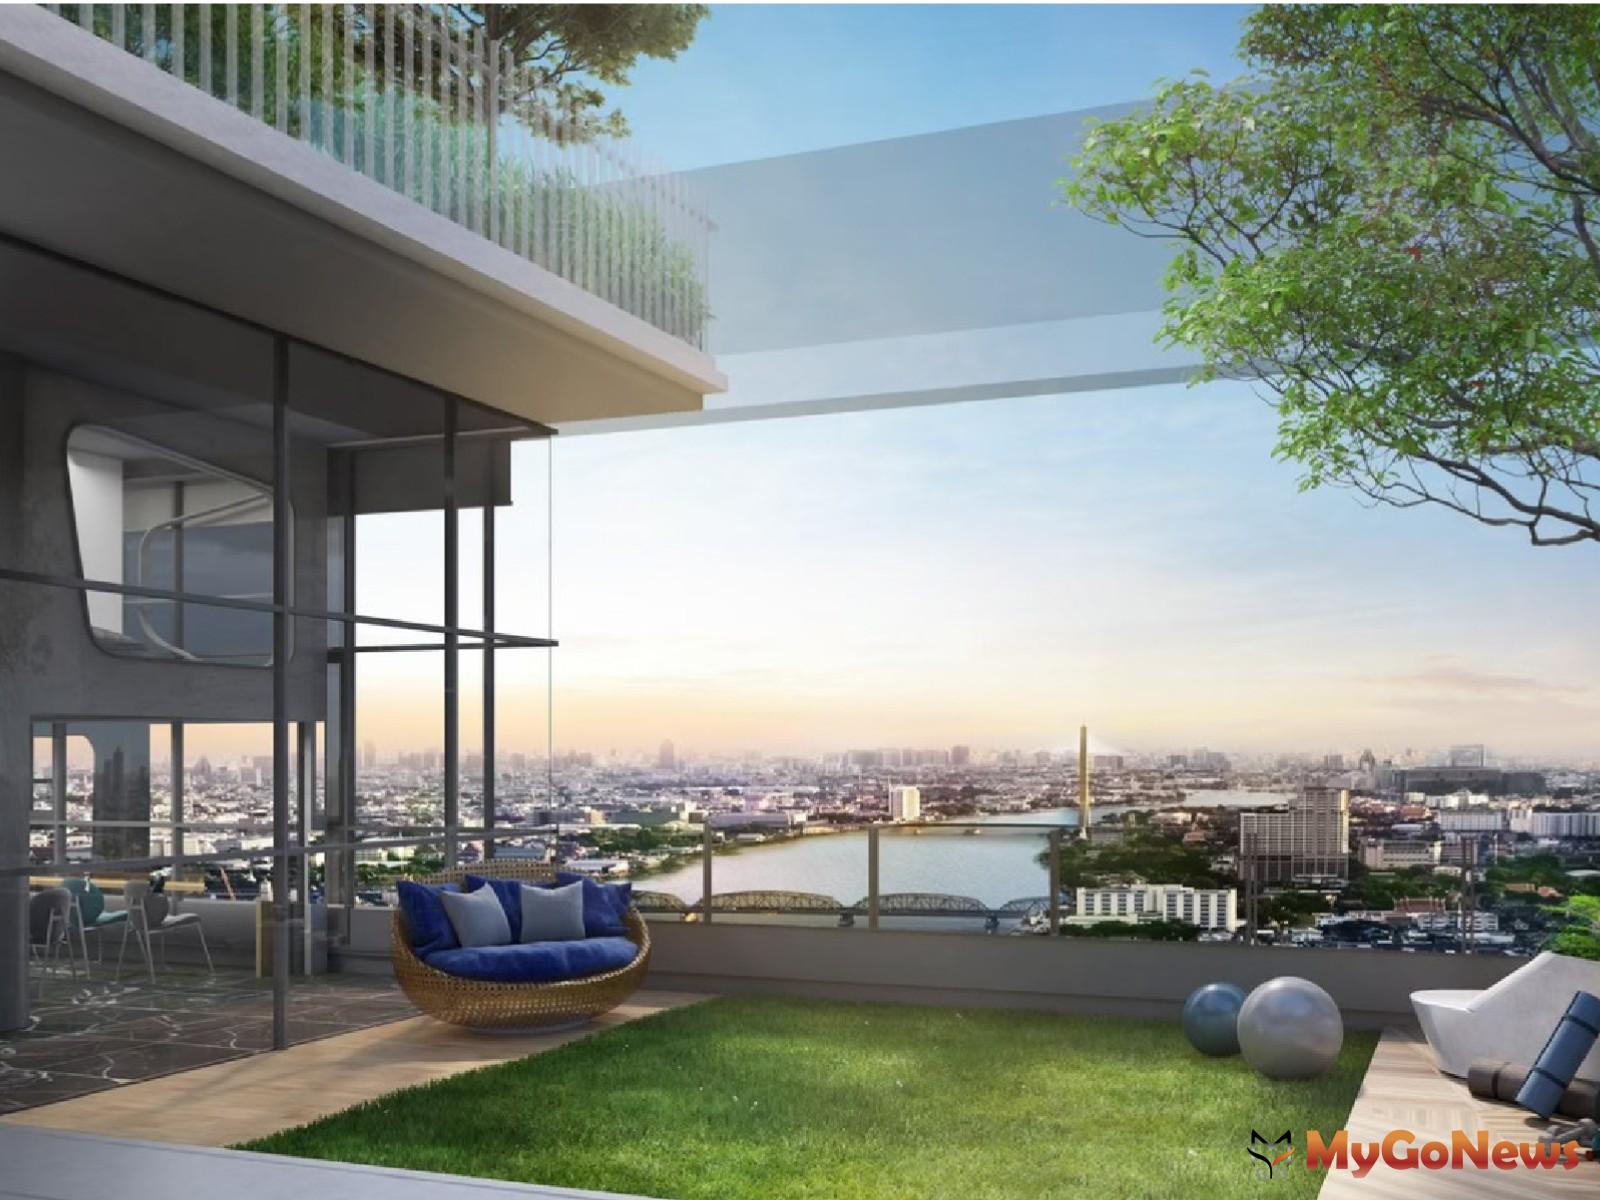 (柏悅灣IDEO CHARAN 70 RIVERVIEW圖/ Ananda) MyGoNews房地產新聞 Global Real Estate